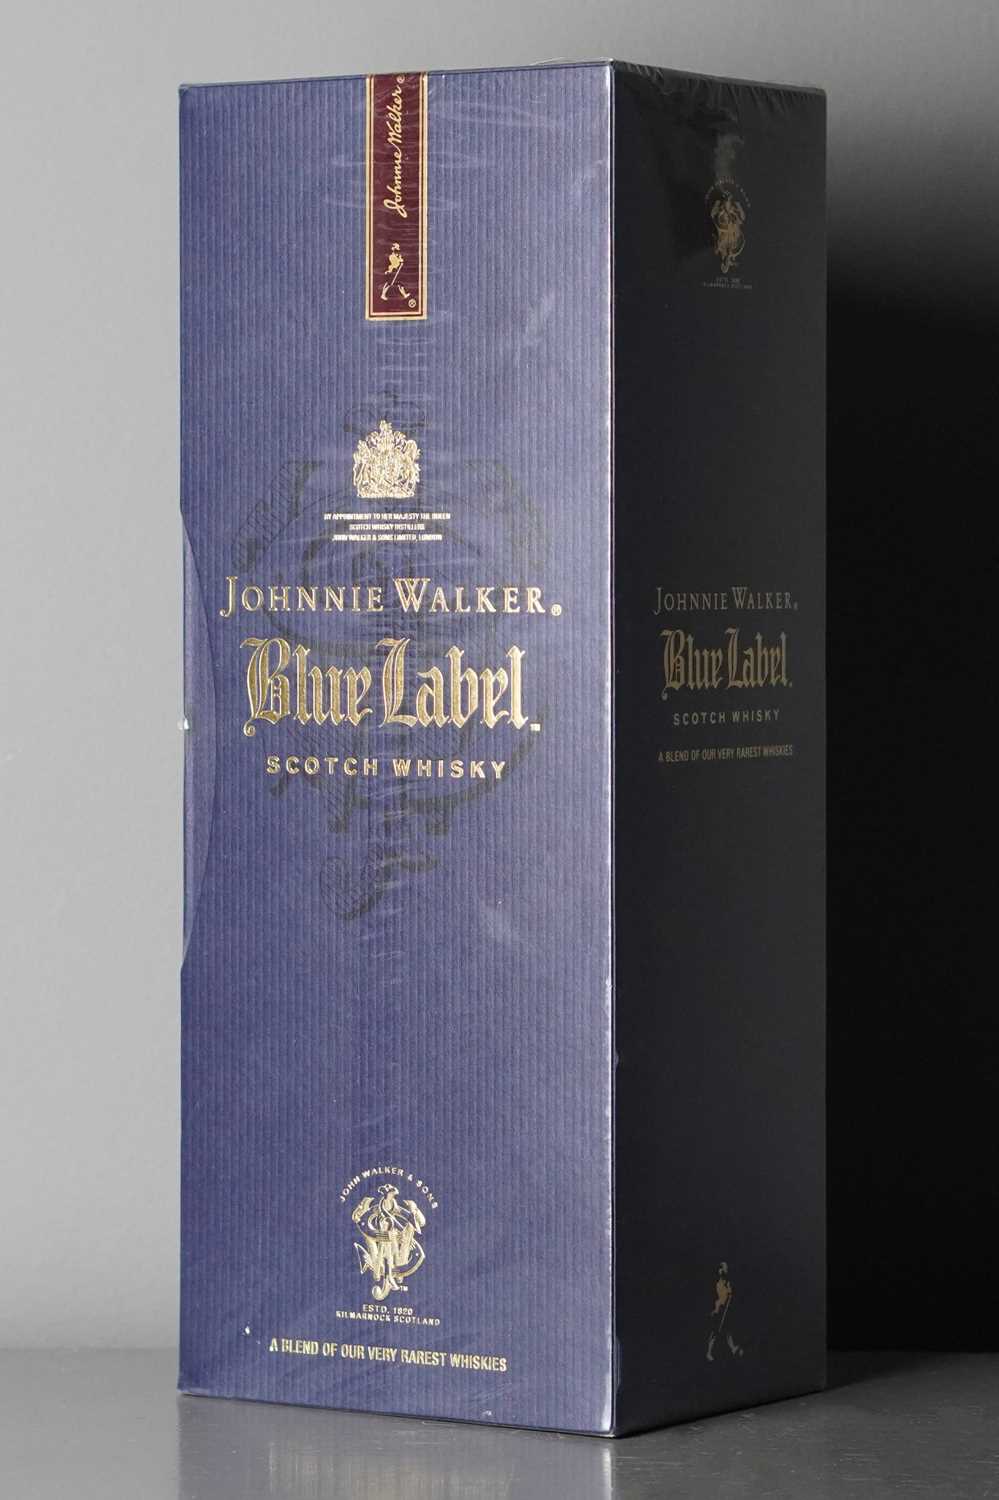 Johnnie Walker Blue Label 75CL - Image 2 of 2